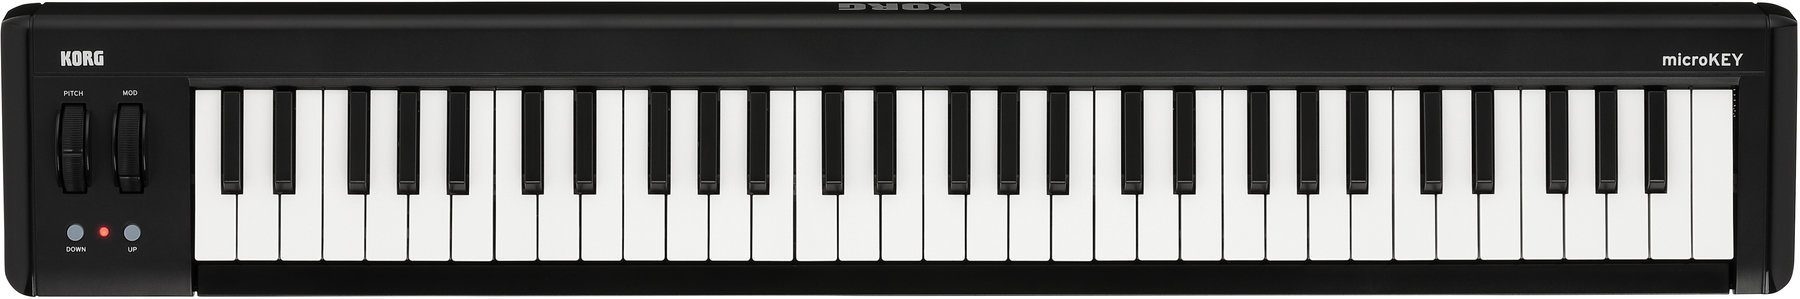 Clavier MIDI Korg MicroKEY2-61